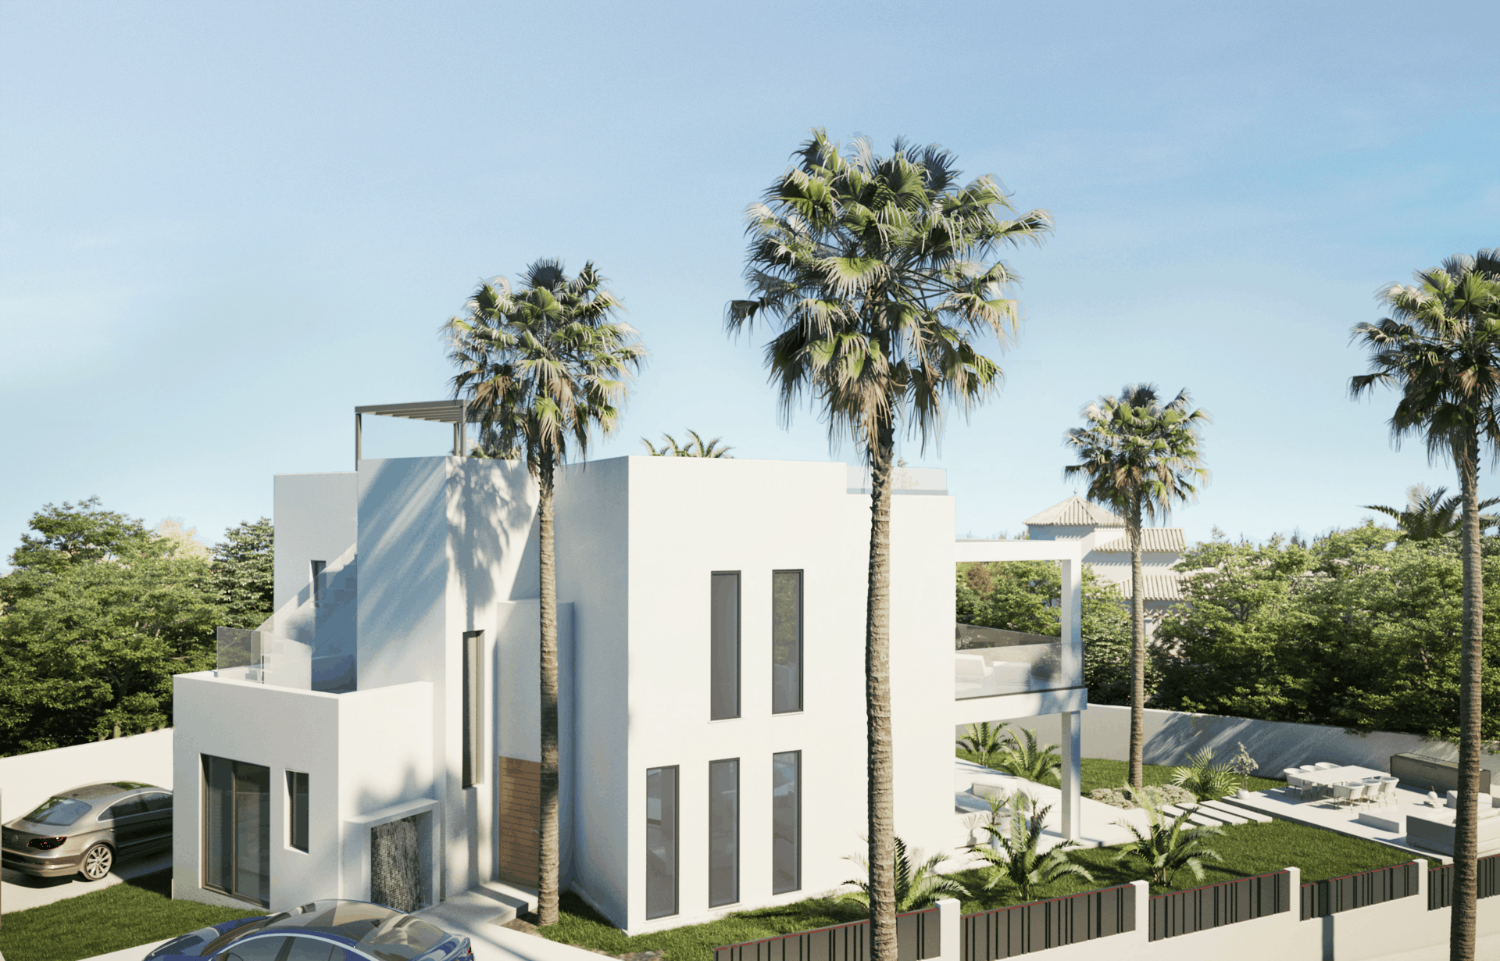 Allein und Lizenz zum Bau einer modernen 3-stöckigen Villa mit Meerblick, nur 200 Meter vom Strand in Marbella Ost entfernt